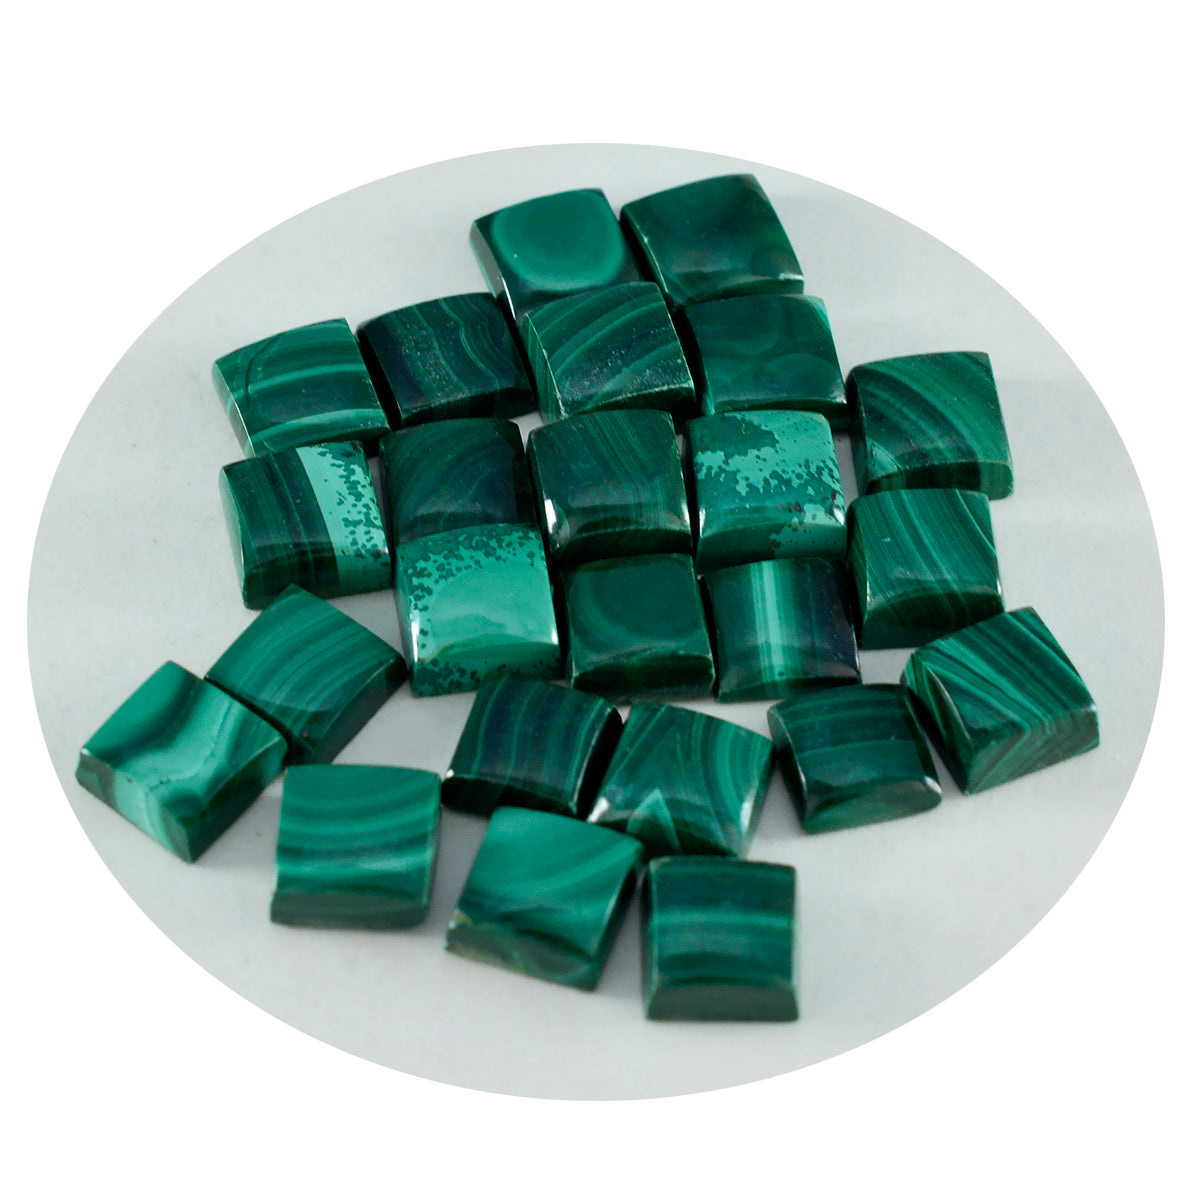 Riyogems 1 Stück grüner Malachit-Cabochon, 7 x 7 mm, quadratische Form, Edelsteine von erstaunlicher Qualität